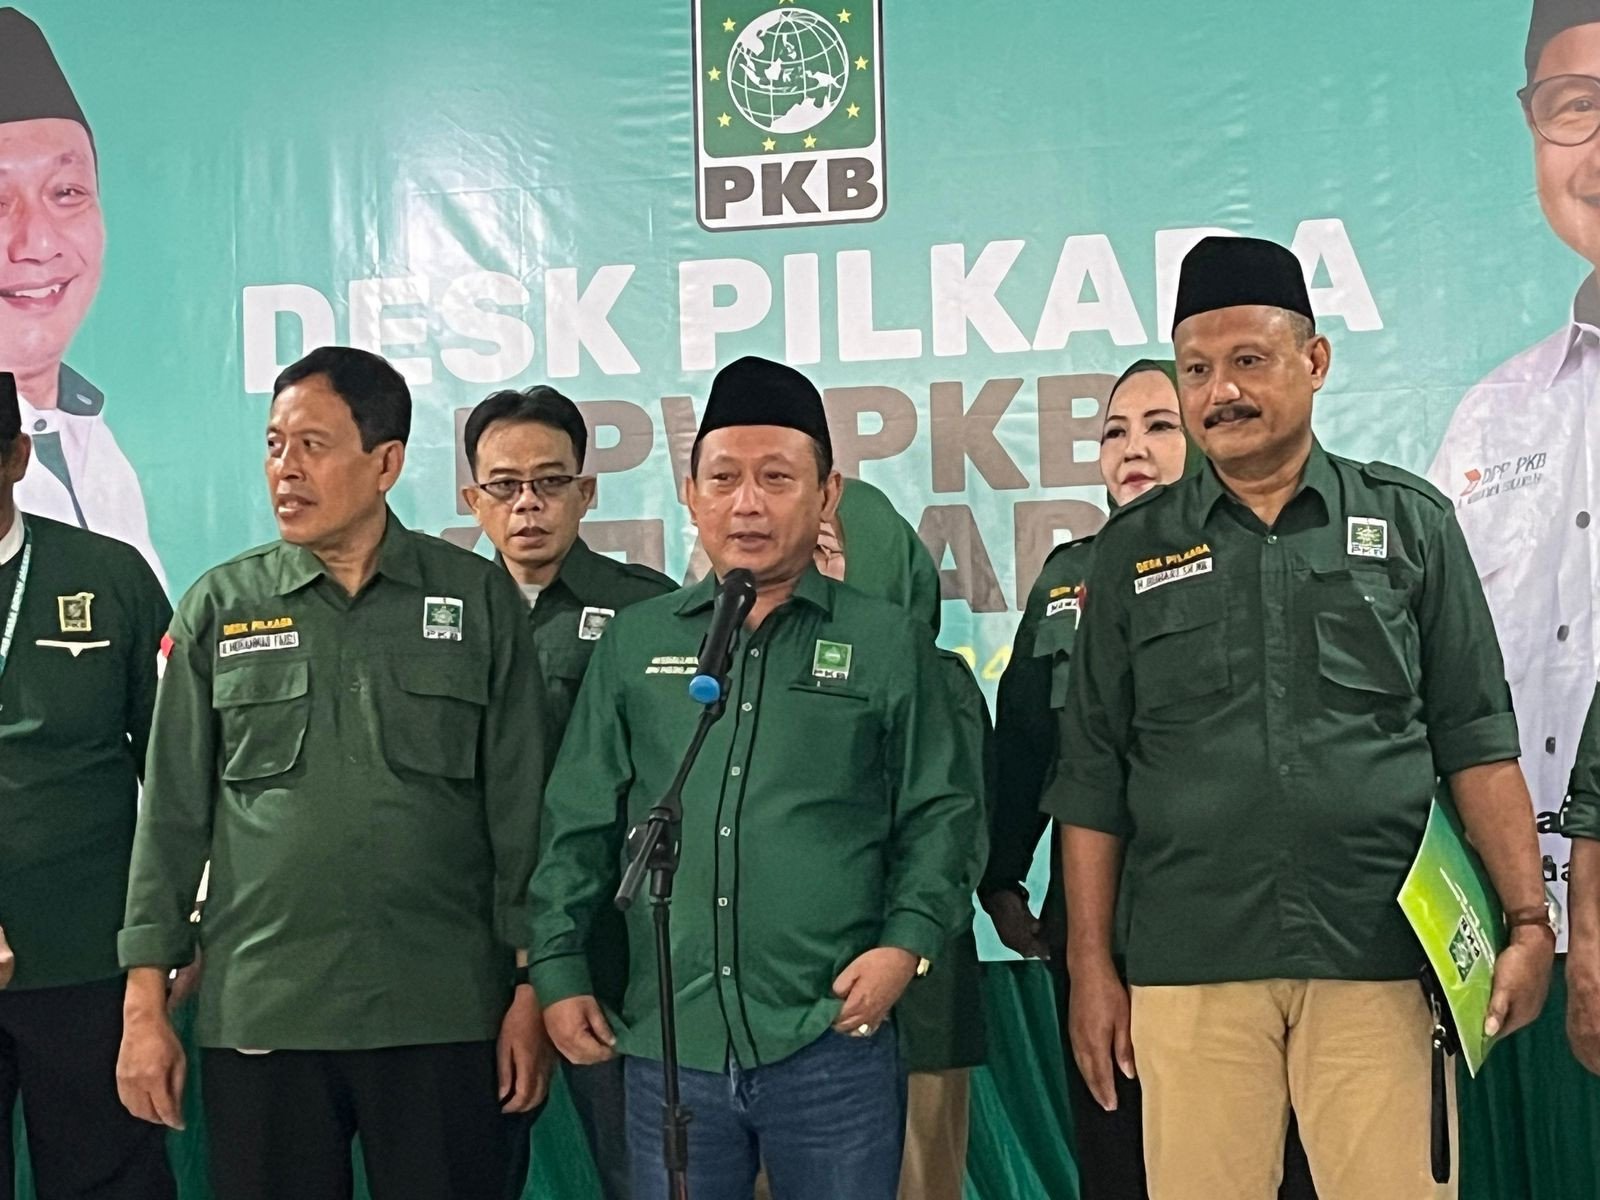 DPW PKB Nilai Anies Baswedan Pilihan Terbaik untuk Pilkada Jakarta